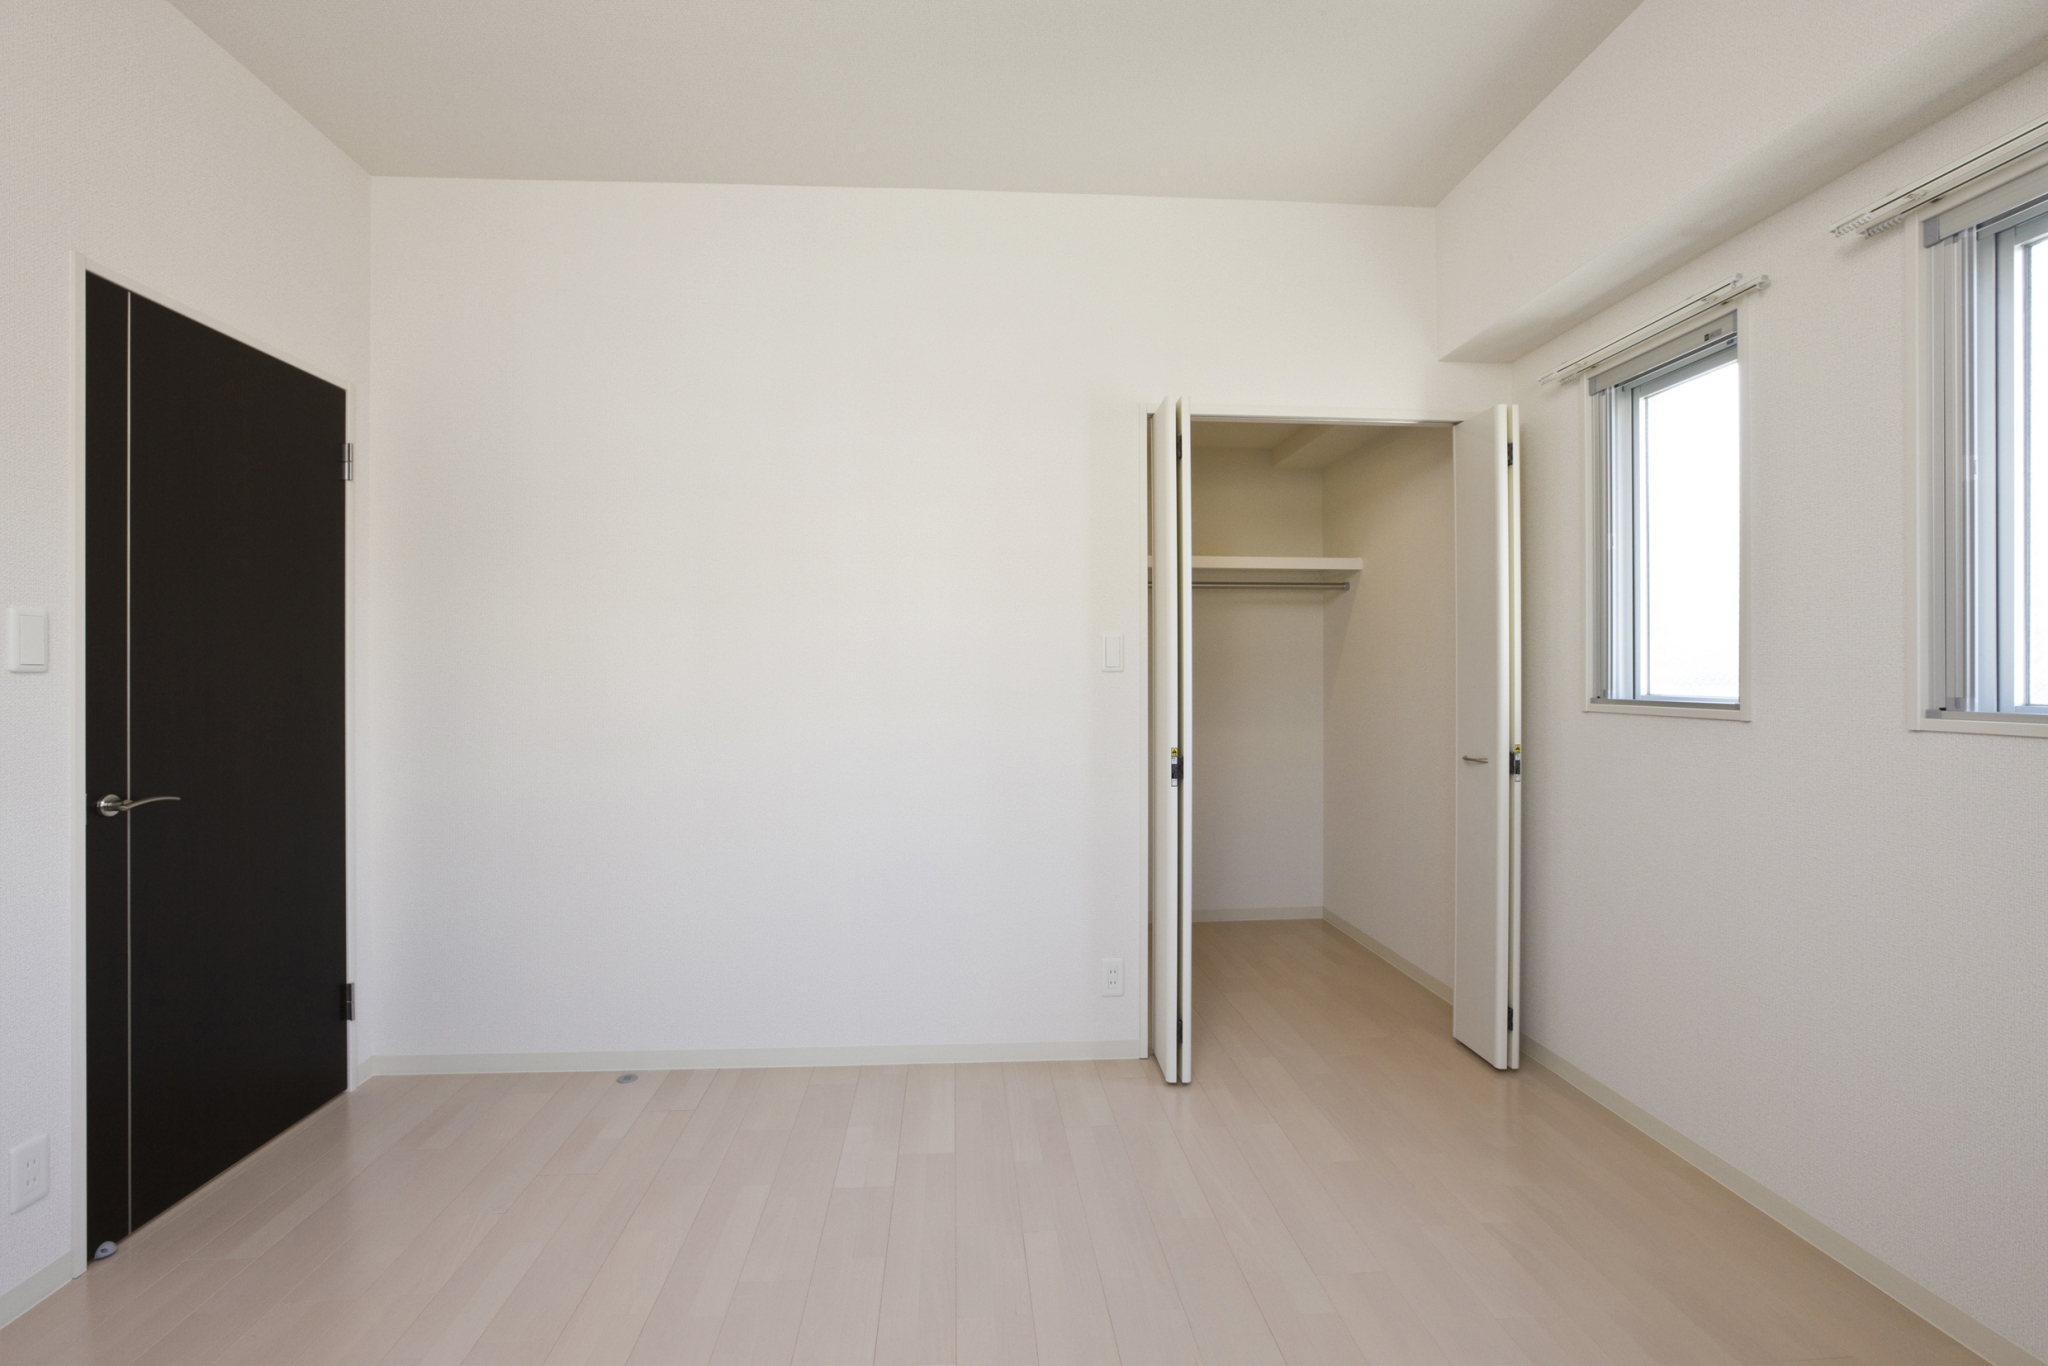 名古屋市名東区の賃貸マンションのドアと壁のコントラストが高い収納付きの洋室